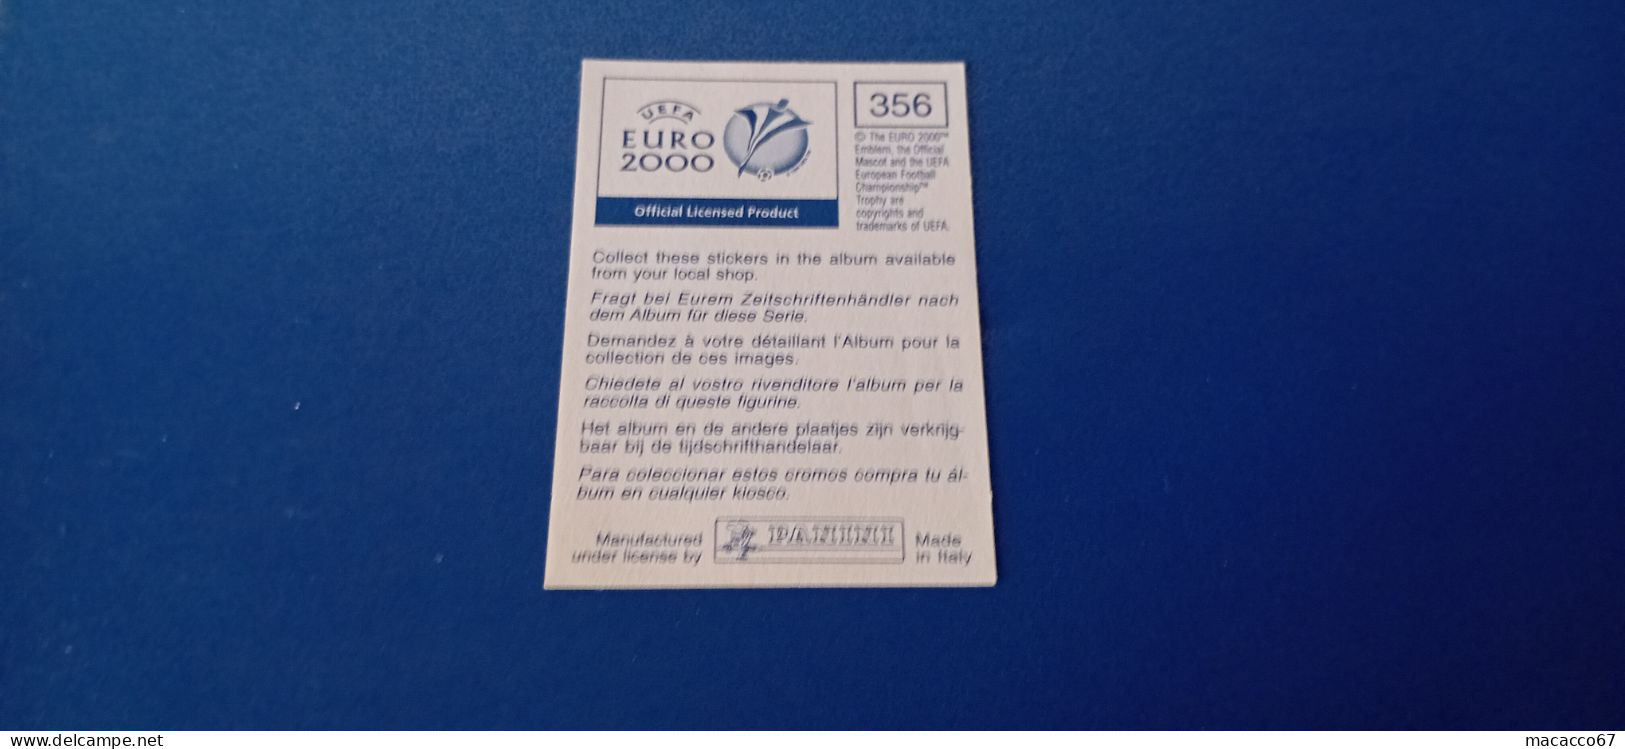 Figurina Panini Euro 2000 - 356 Trezeguet Francia - Italian Edition